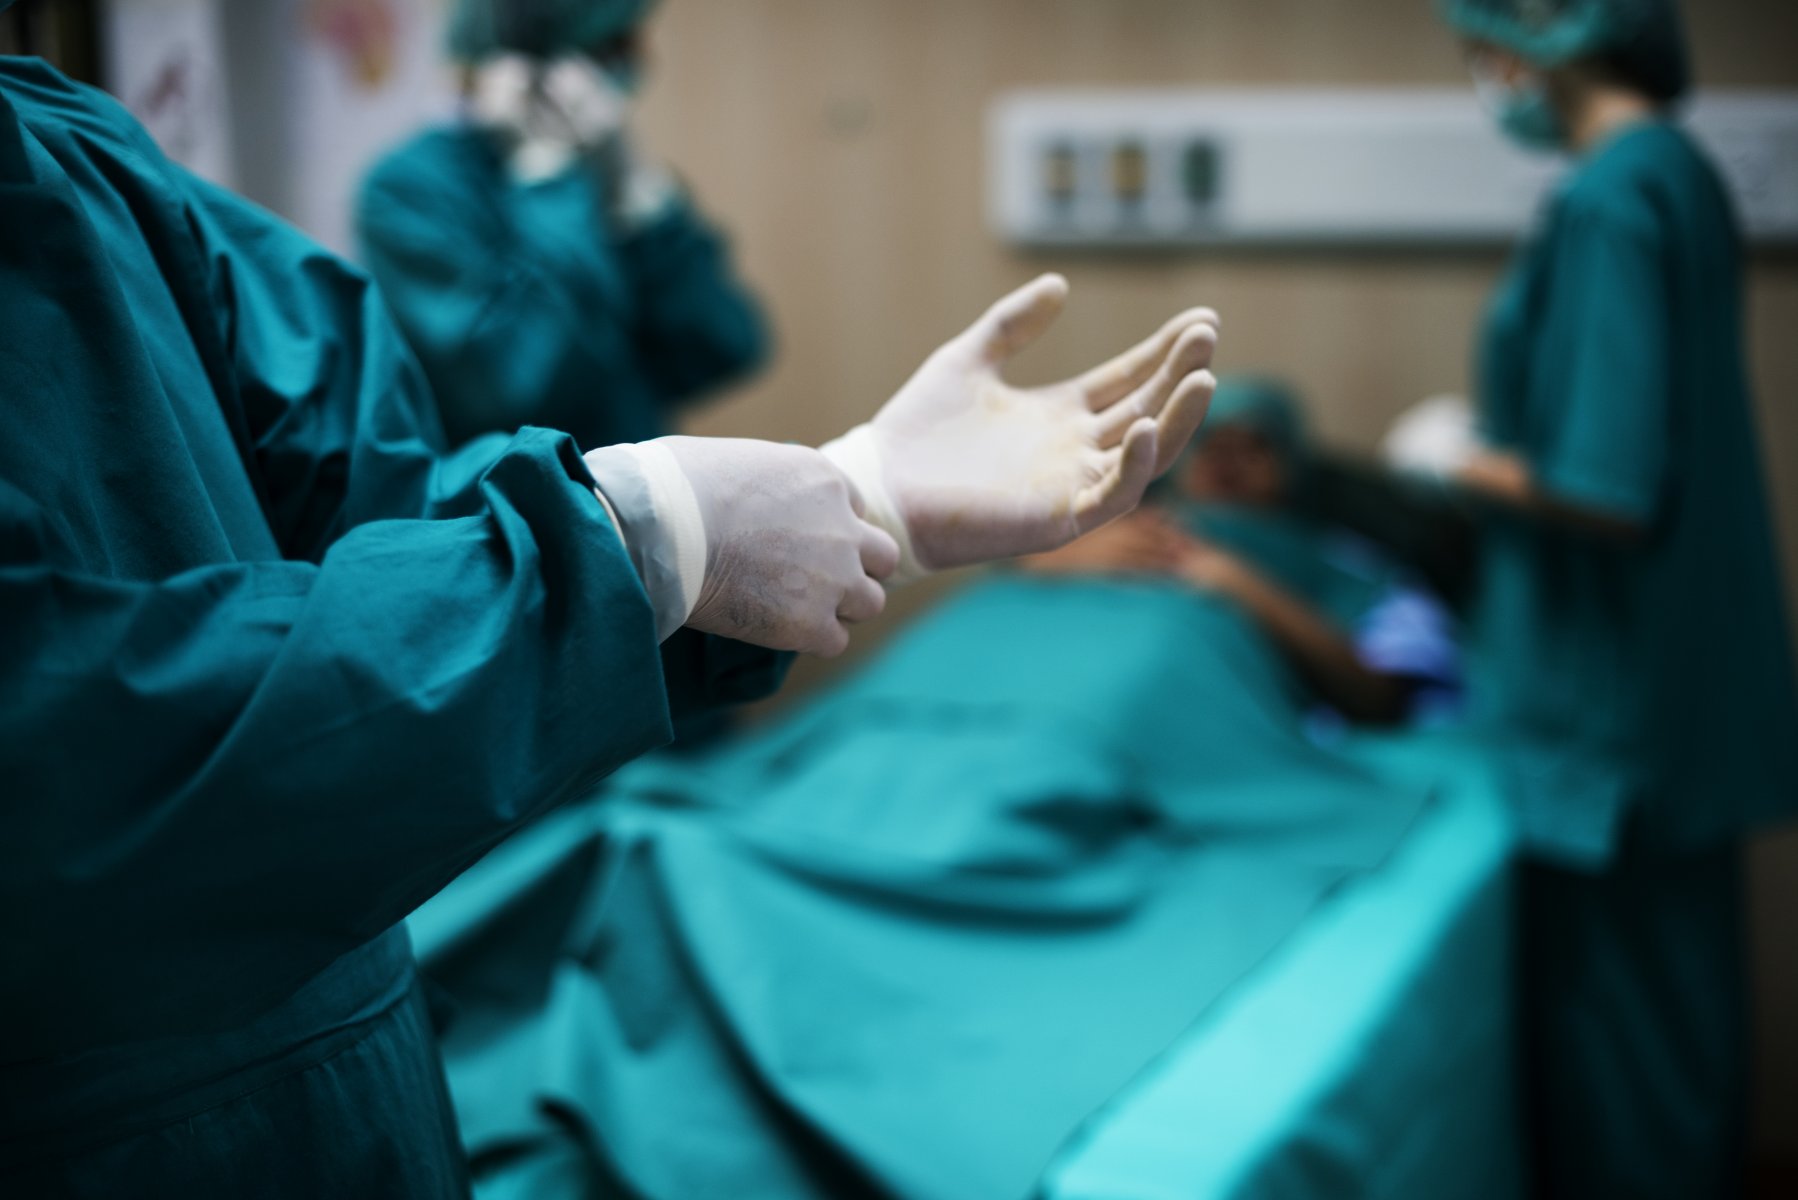 Видновские врачи заменили 53-летнему мужчине пораженный тазобедренный сустав на искусственный